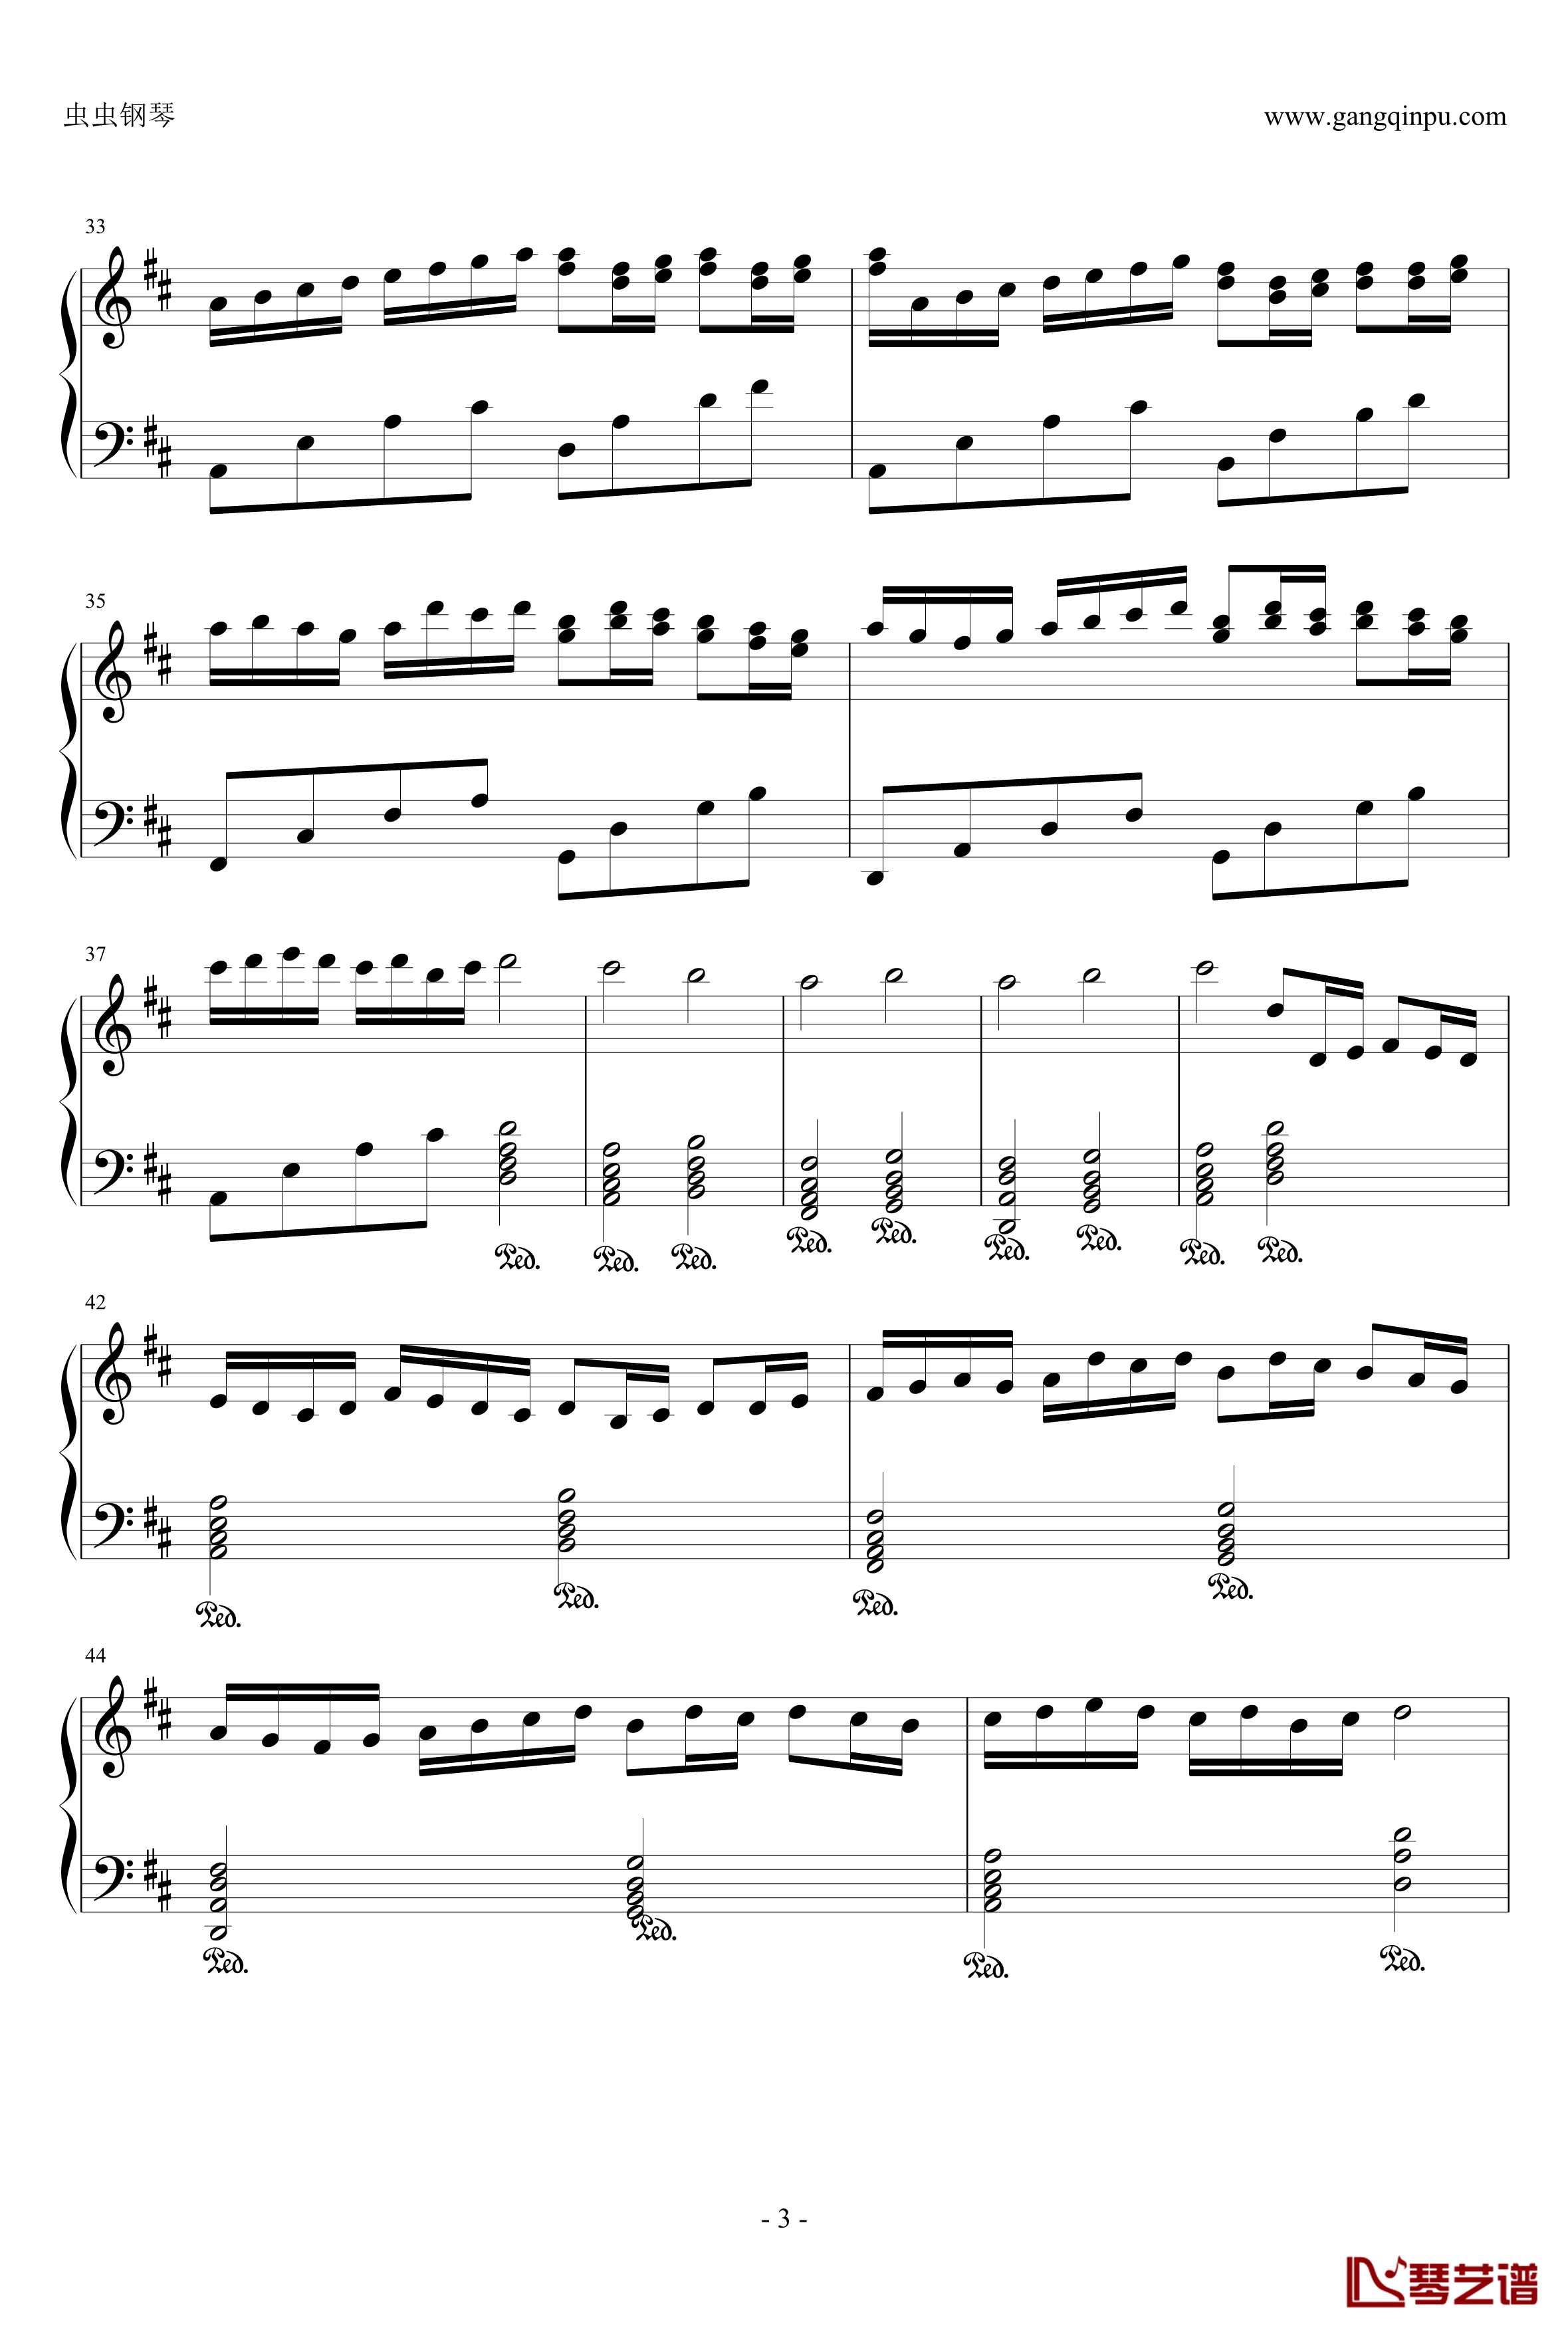 卡农：大爱人间钢琴谱-完整版-帕赫贝尔-Pachelbel3